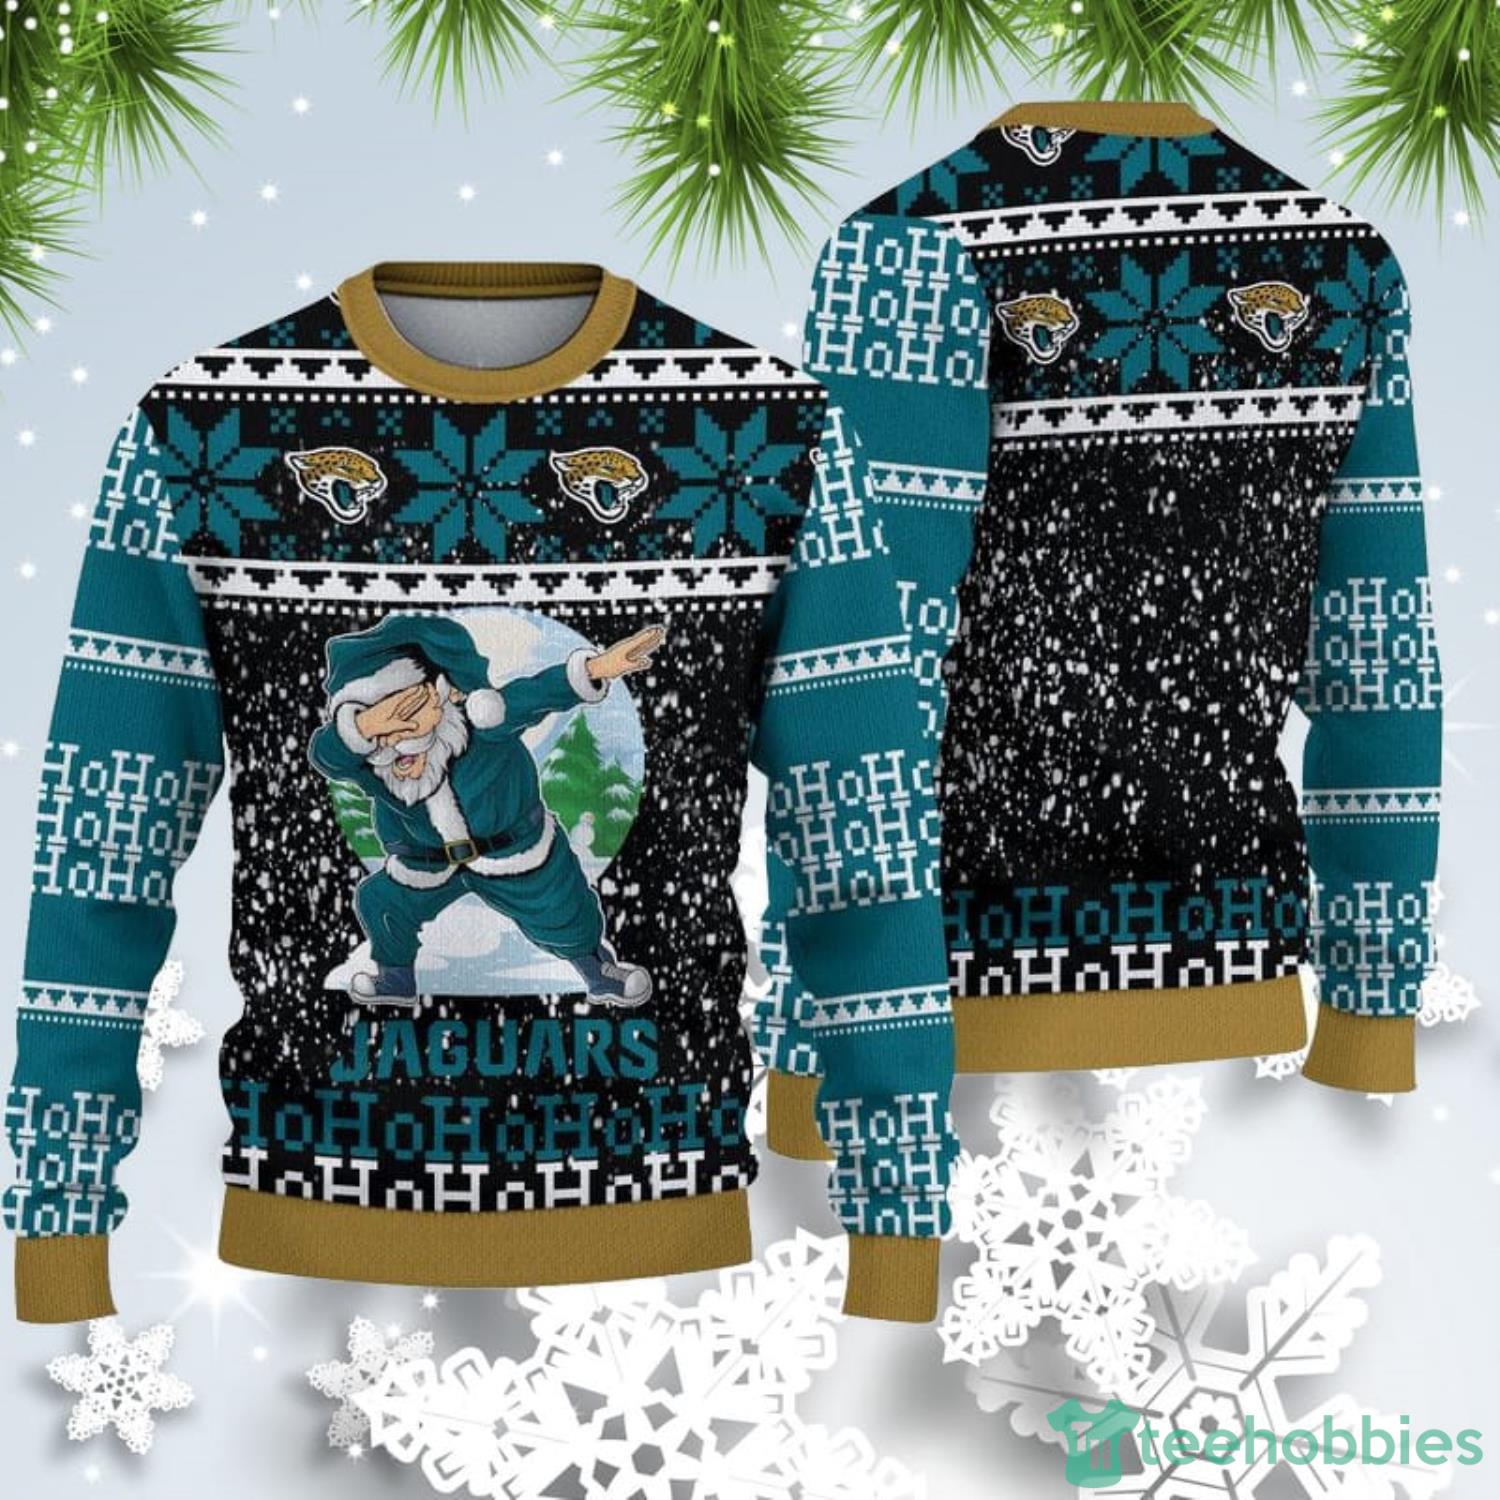 jacksonville jaguars christmas sweater